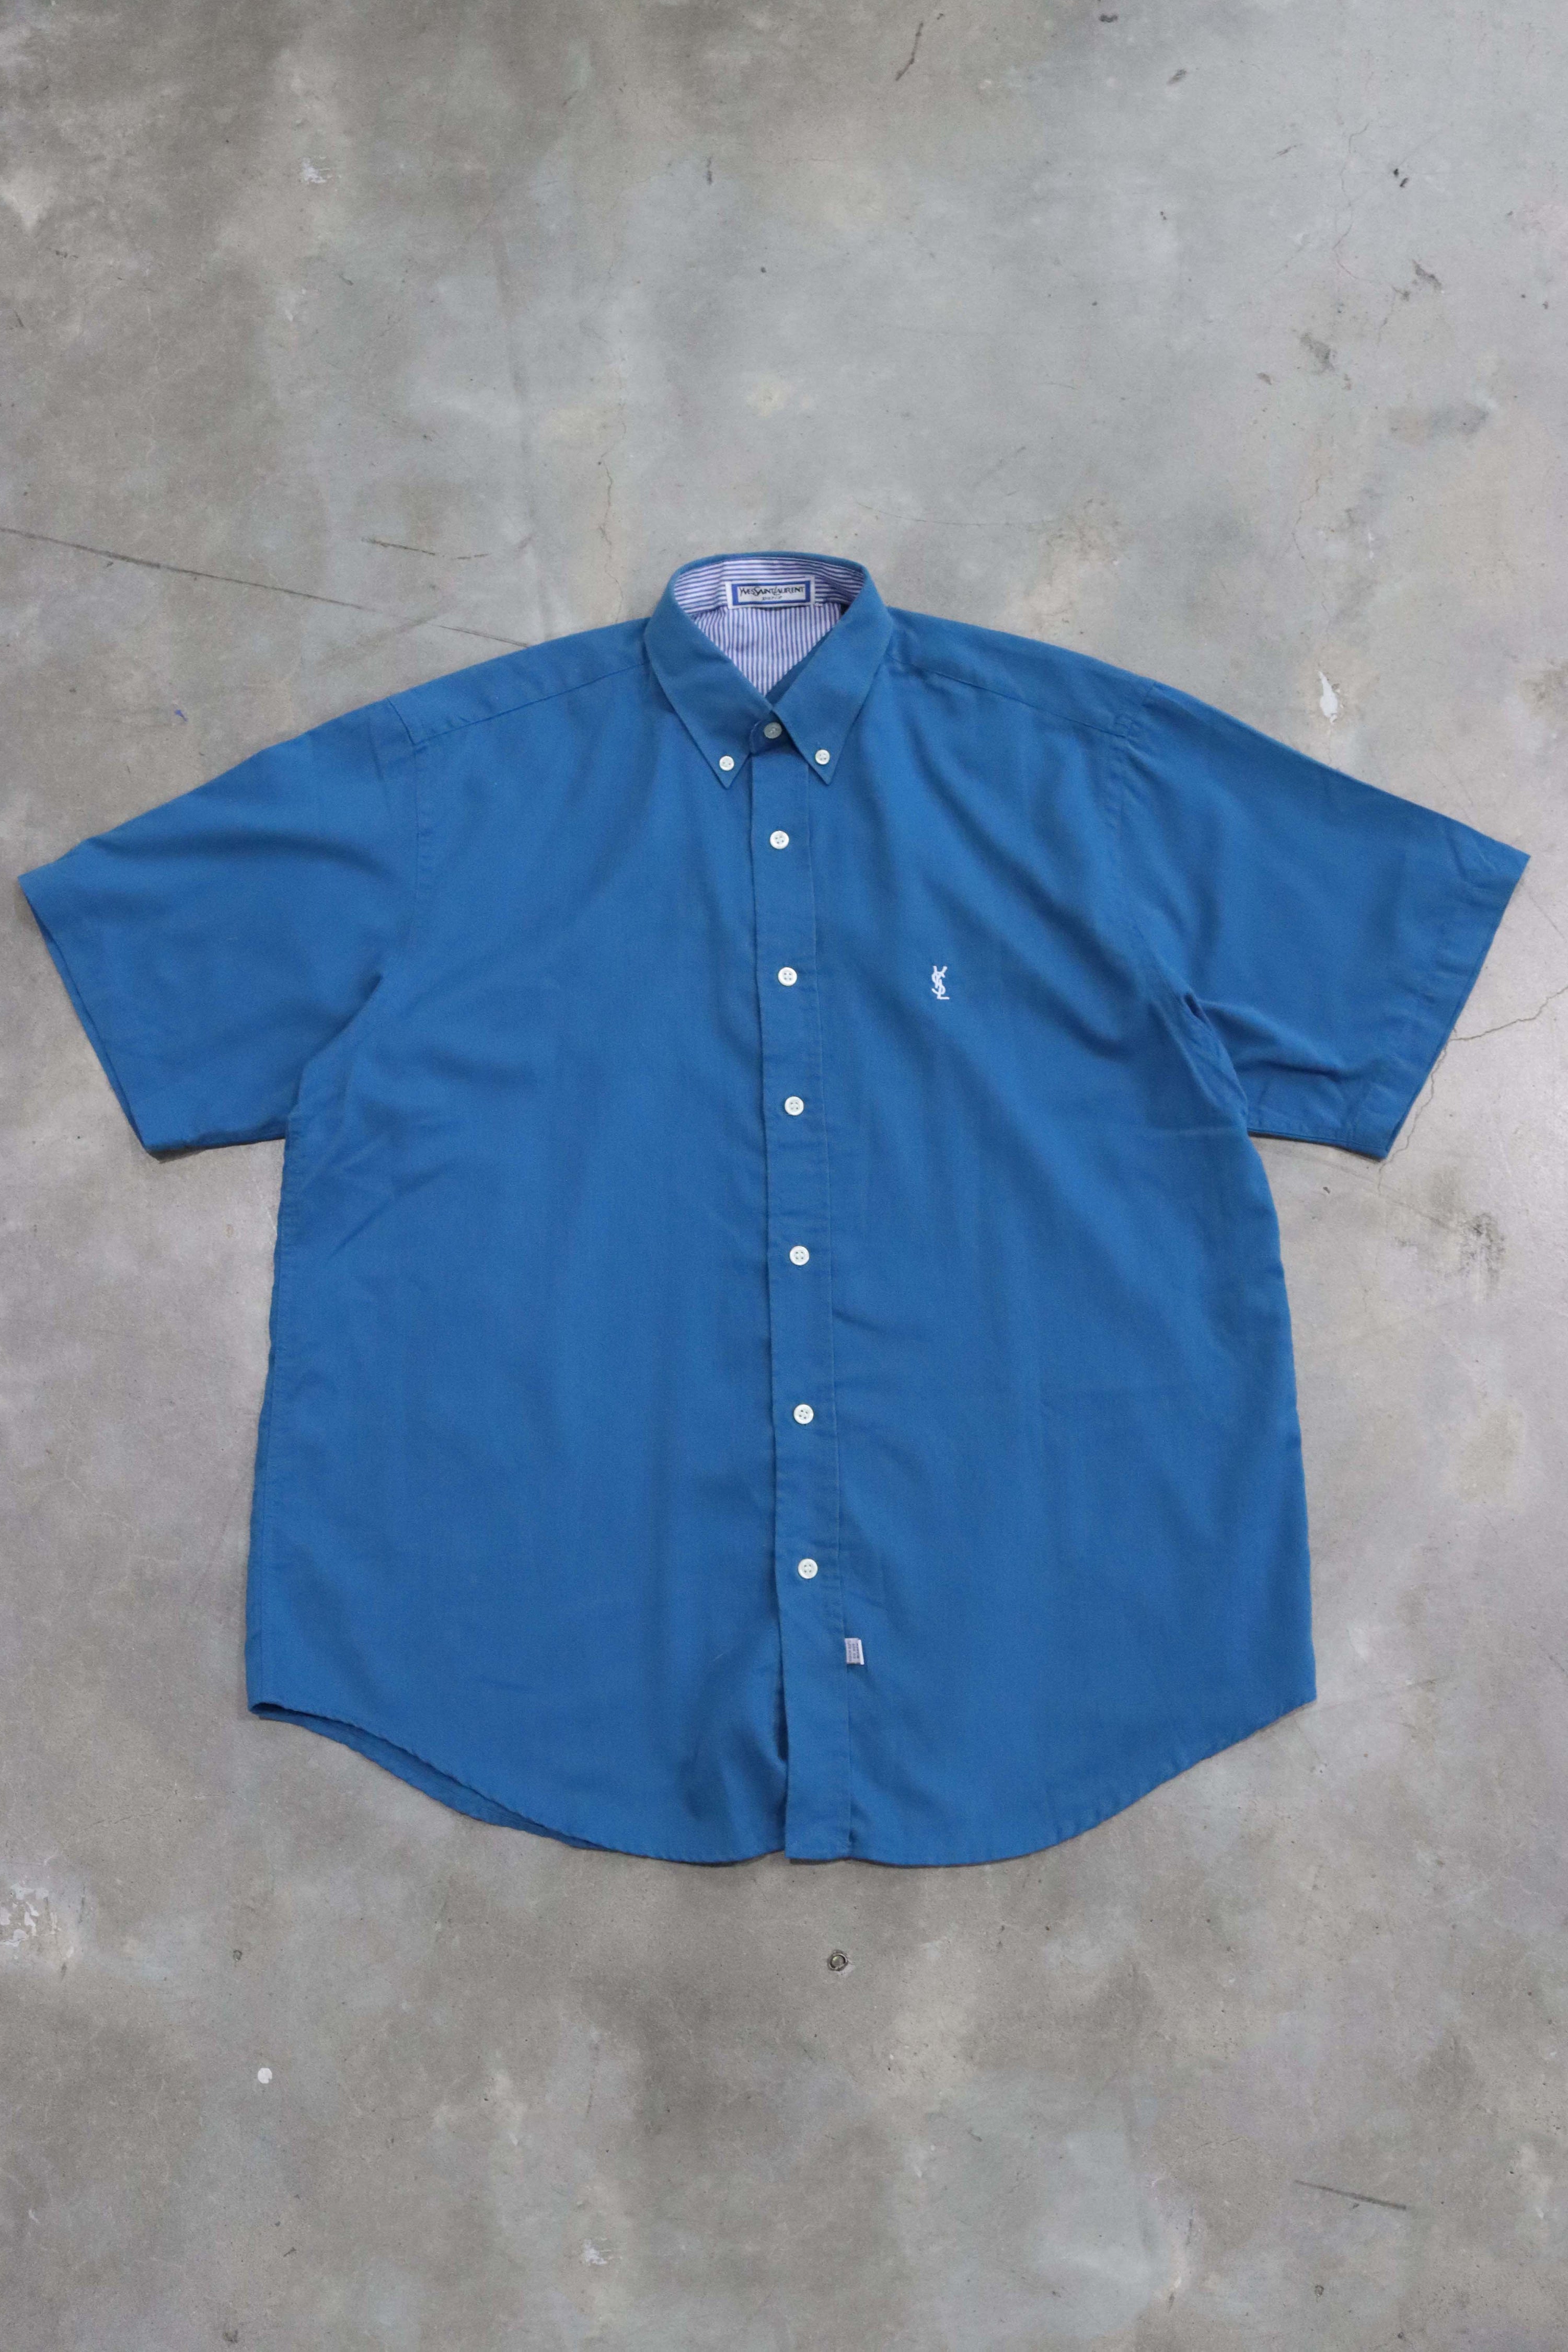 Vintage YSL Plaid Button Up Shirt Blue